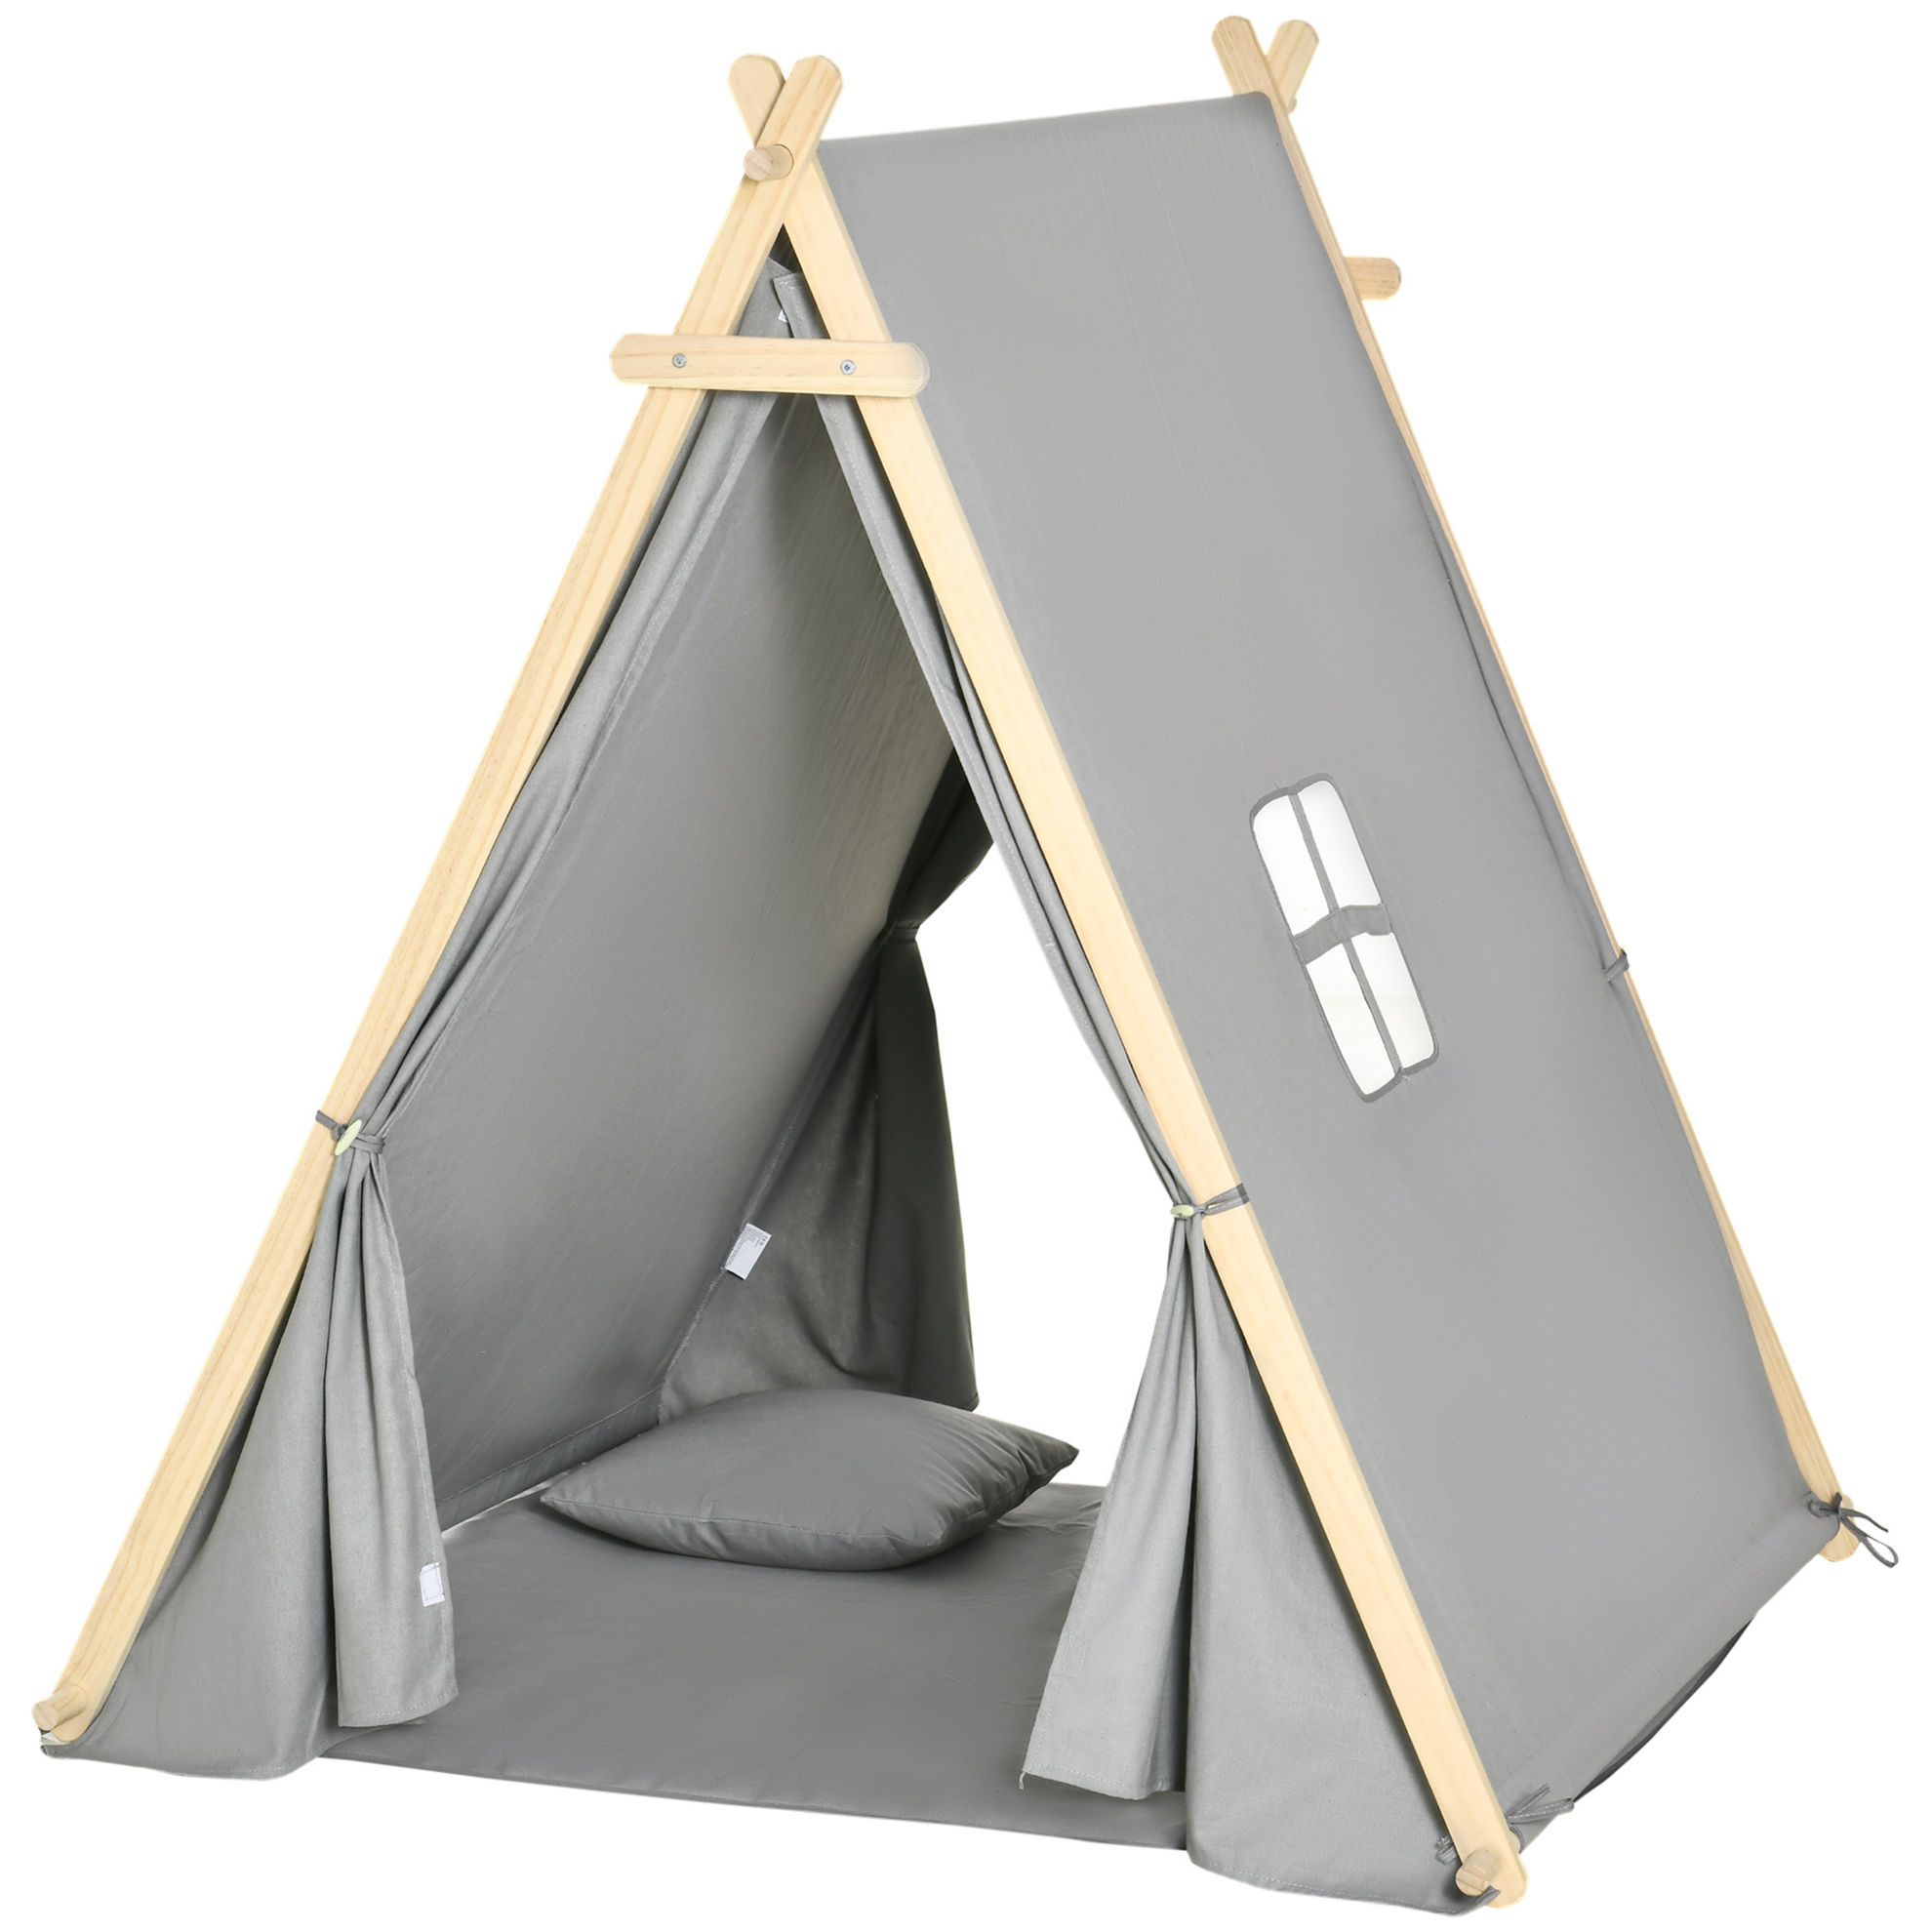 Kinder Tipi Zelt mit Kissen, Bodenmatte und Aufbewahrungstasche grau Farbe:  grau | Weltbild.de